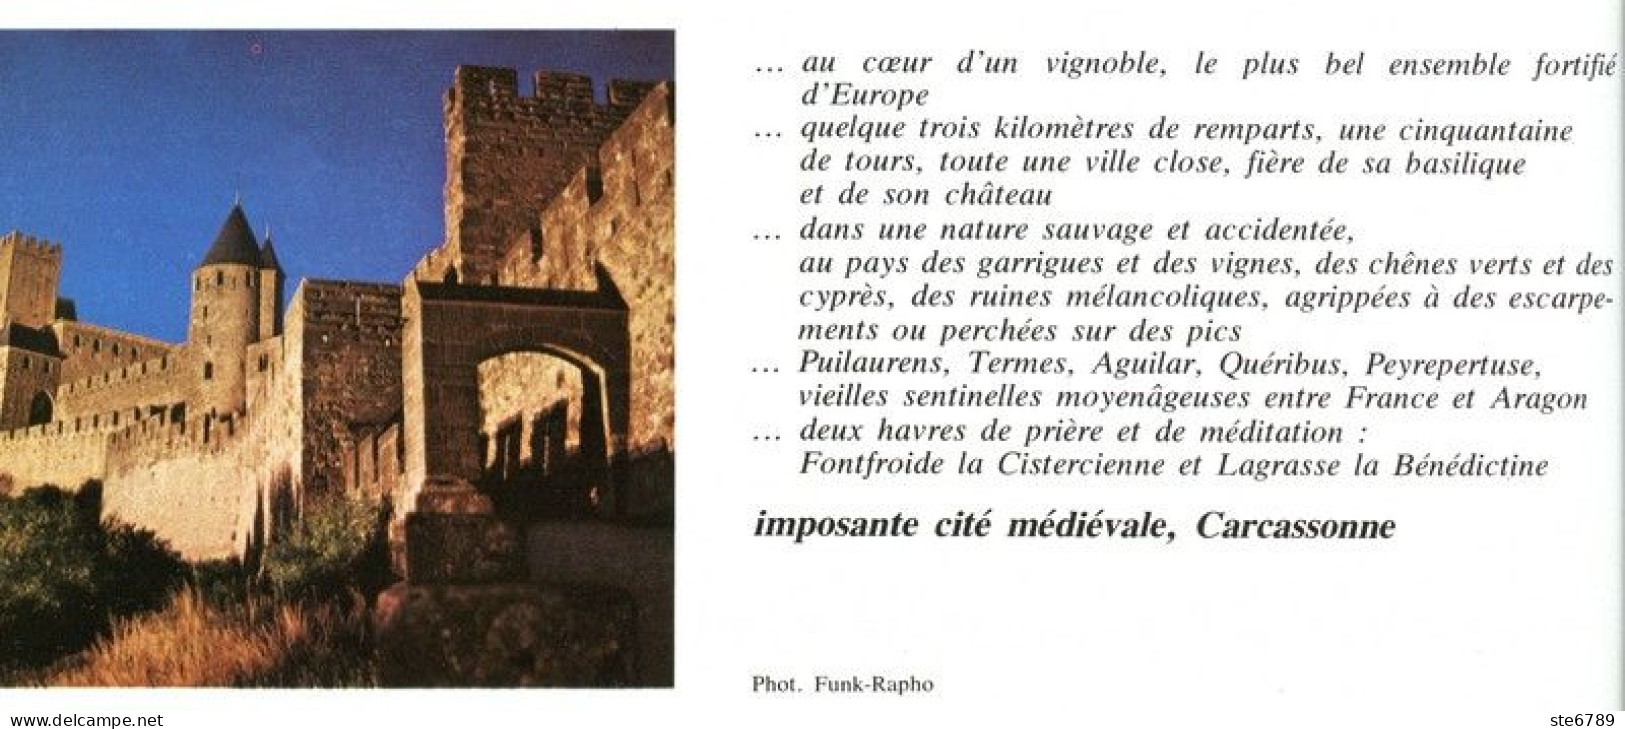 CARCASSONNE IMPOSANTE CITE MEDIEVALE   Revue Photos 1980 BEAUTES DE LA FRANCE N° 7 - Géographie